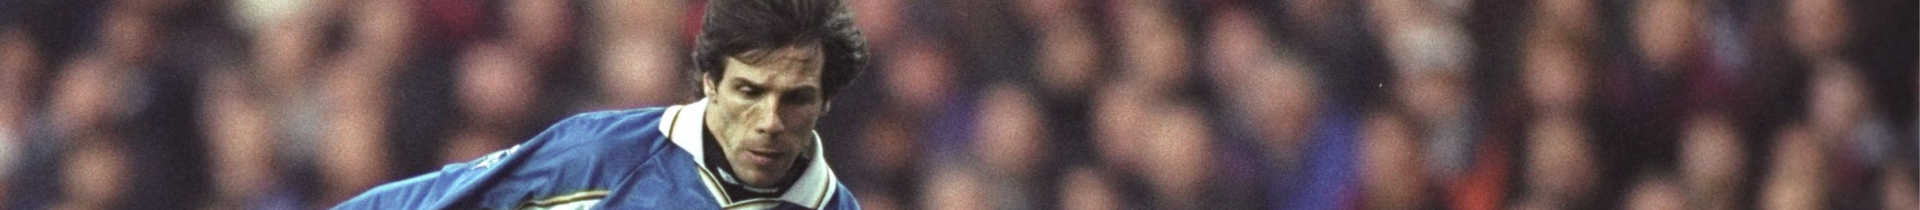 Gianfranco Zola Signed Chelsea Memorabilia 